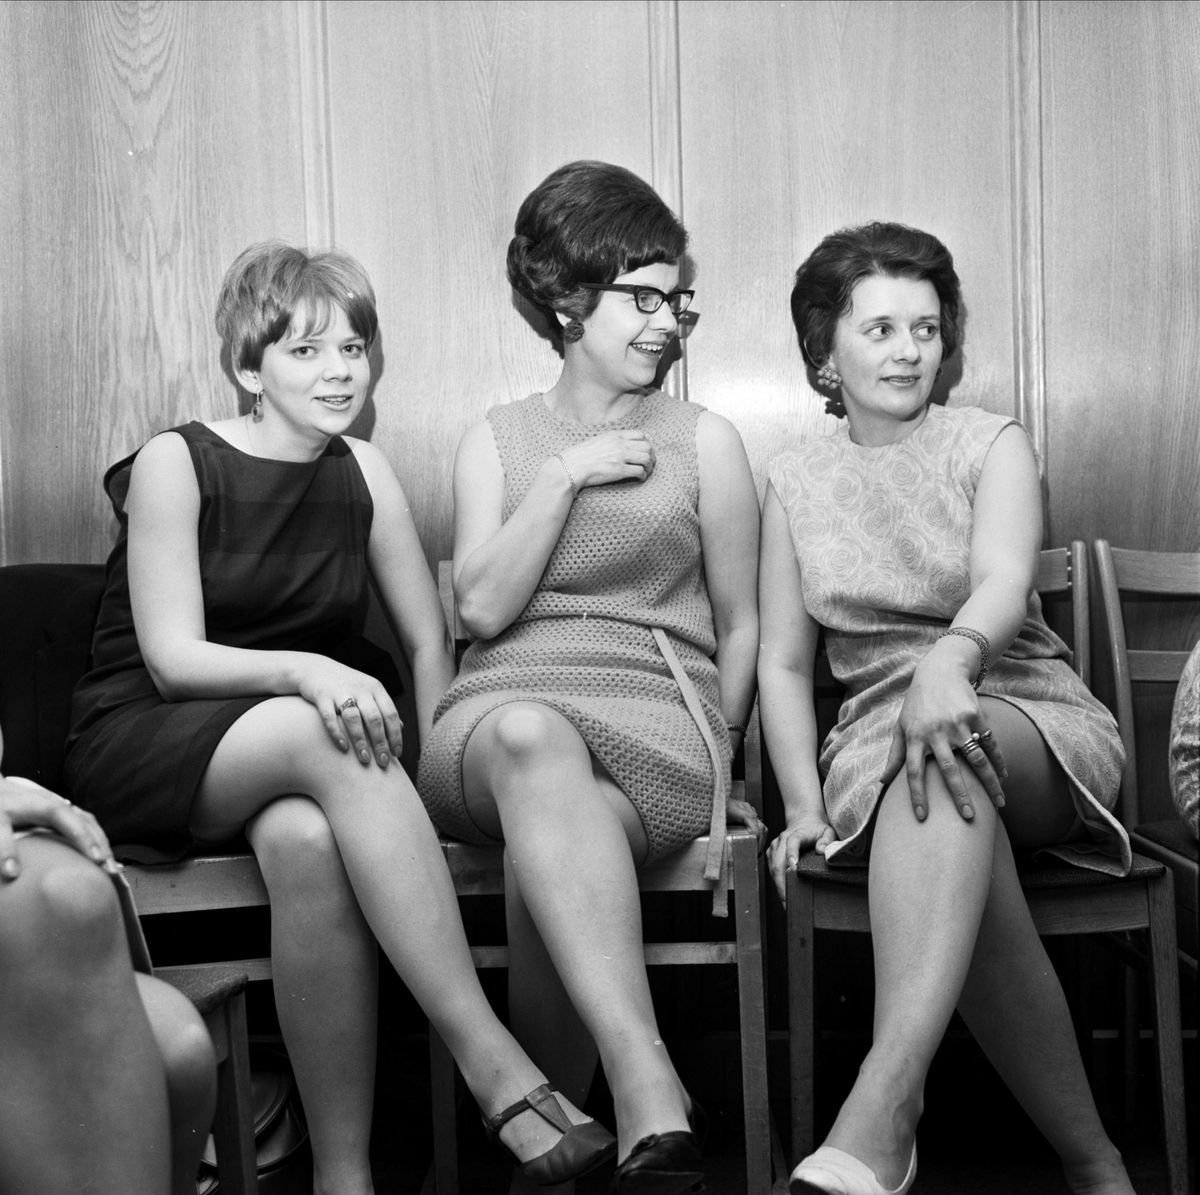 Tierps socialdemokratiska kvinnoklubb har fest på Hembygden i Gryttjom, Tierps socken, Uppland april 1967